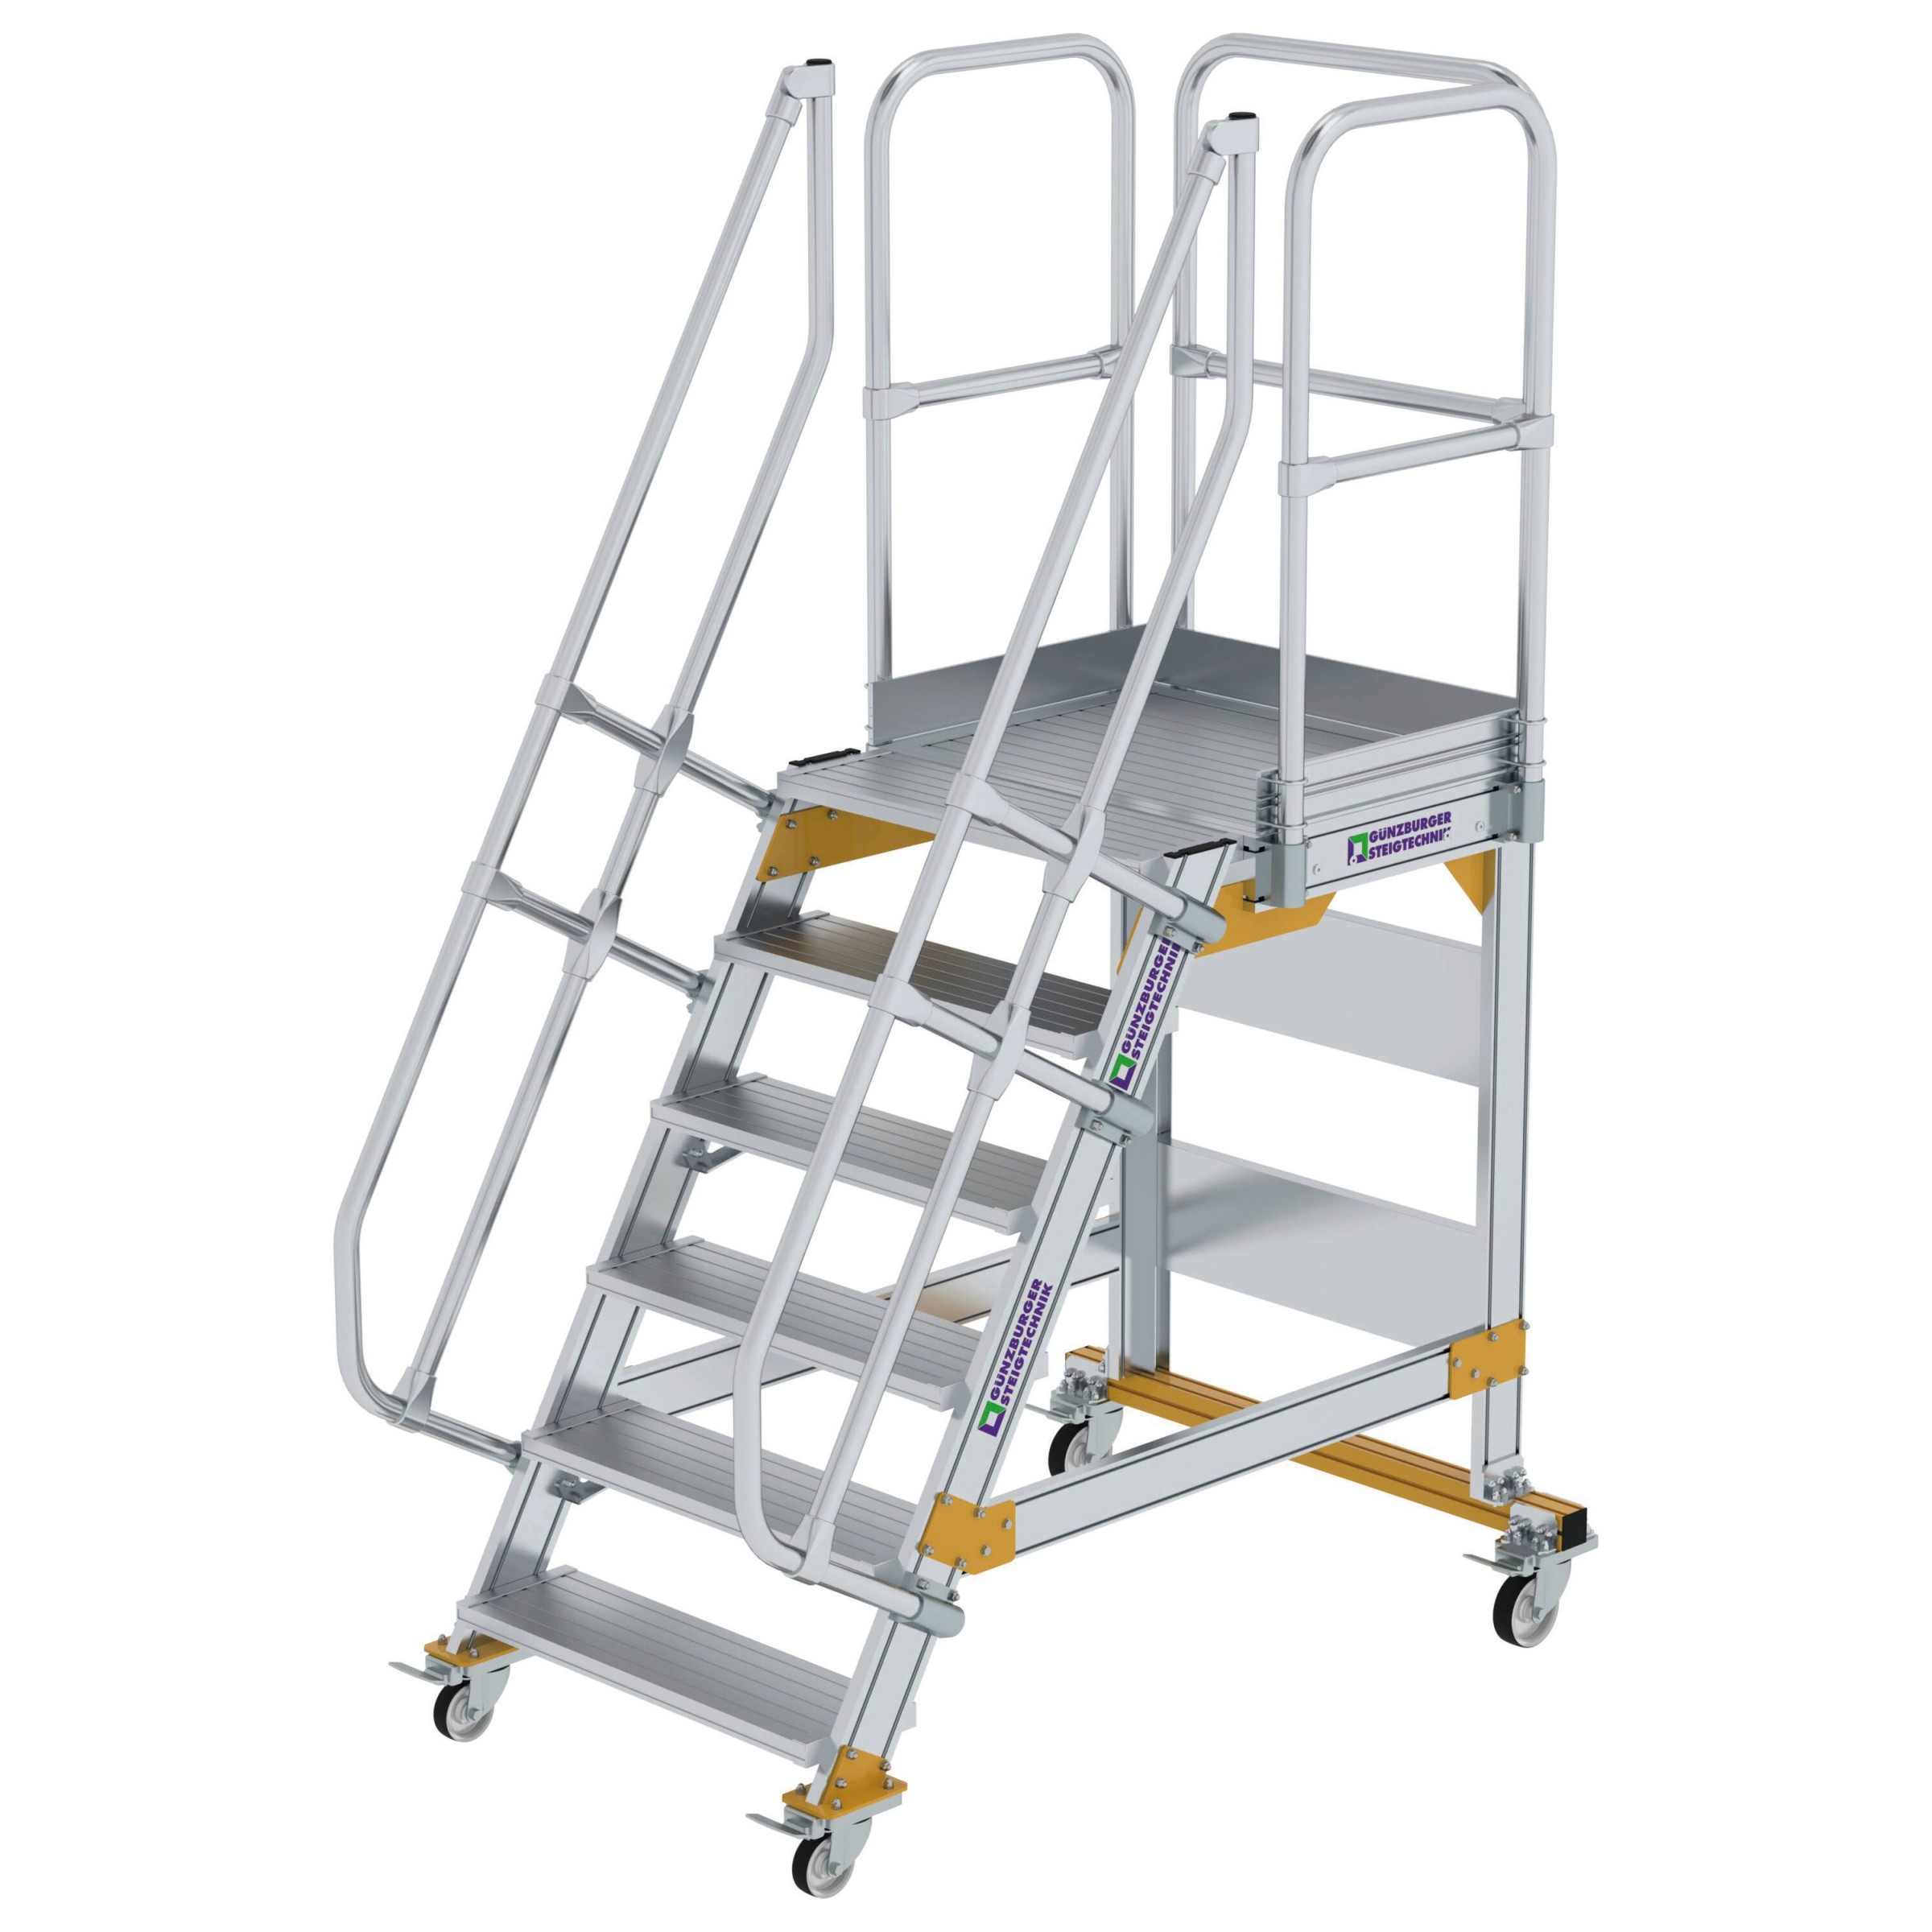 Aluminium-Plattform-Treppe fahrbar 60°, Stufenbreite 800 mm, 4 Stufen